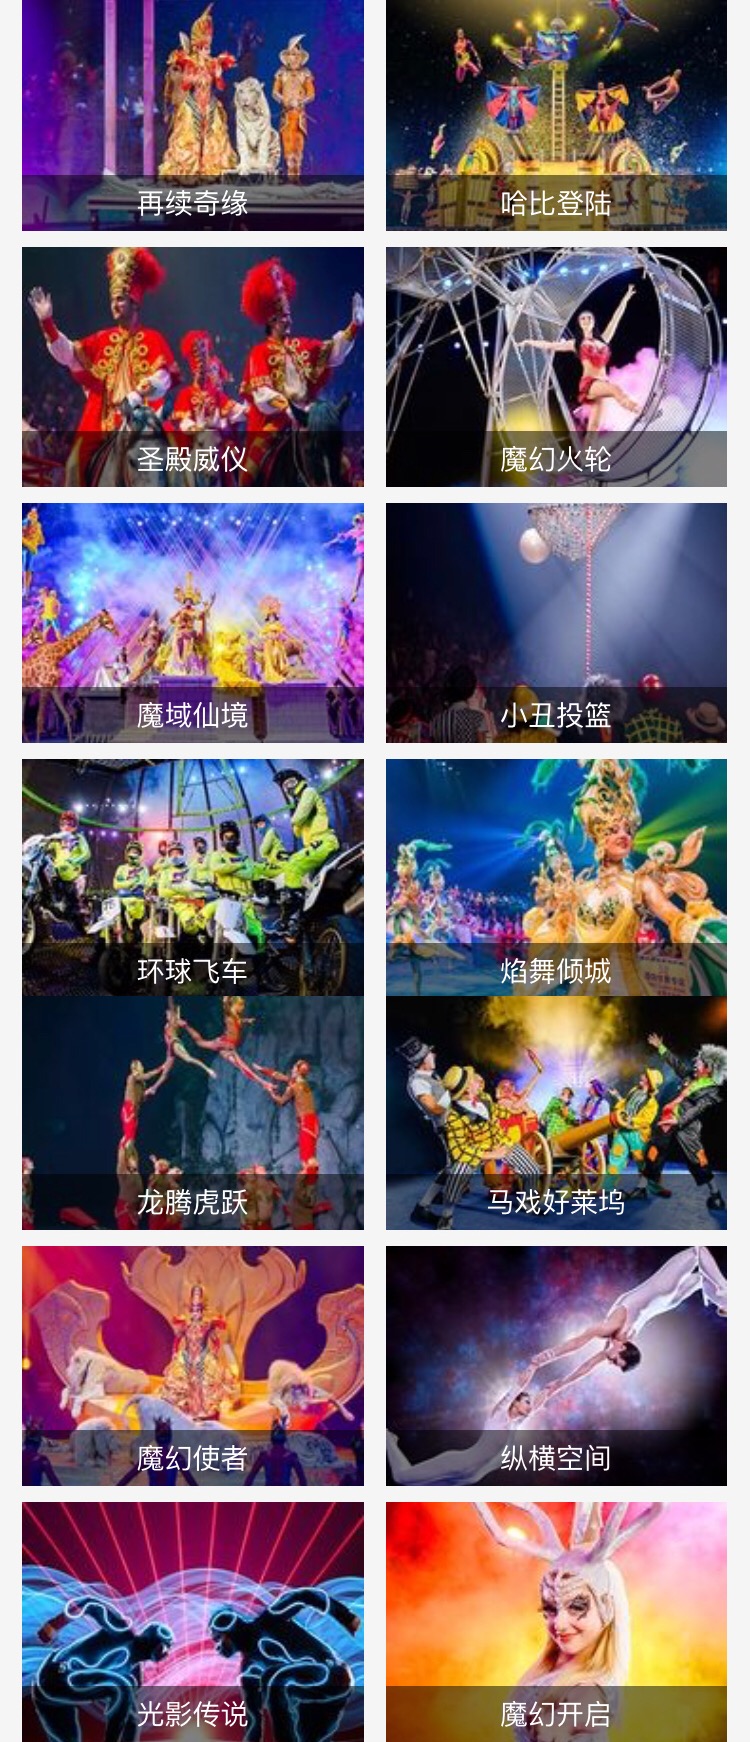 广州长隆国际大马戏表演节目有哪些?